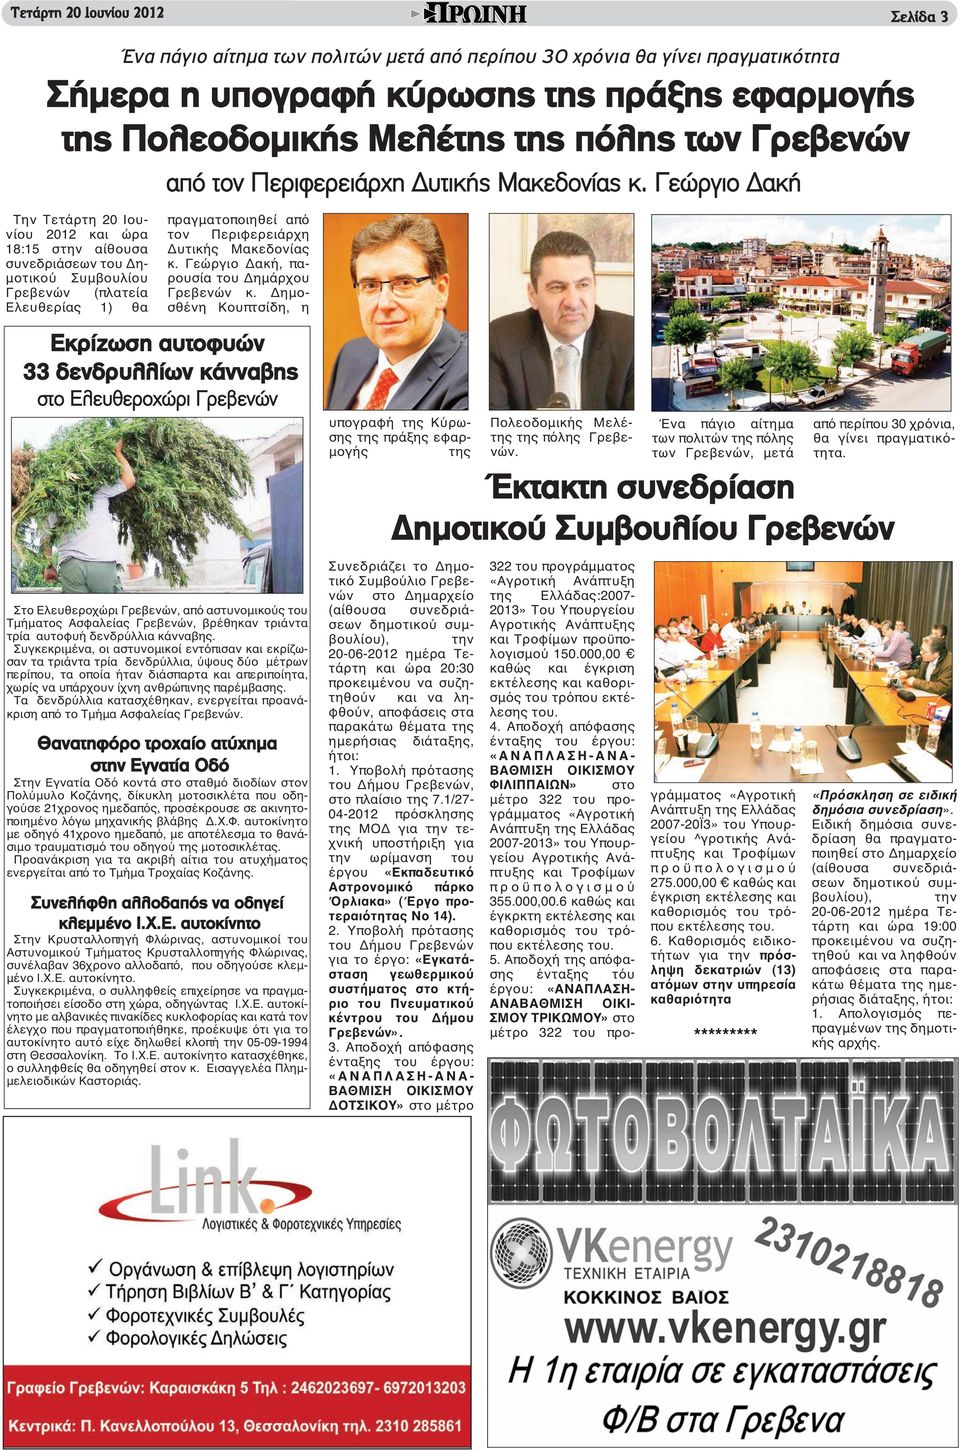 Γεώργιο Δακή Την Τετάρτη 20 Ιουνίου 2012 και ώρα 18:15 στην αίθουσα συνεδριάσεων του Δημοτικού Συμβουλίου Γρεβενών (πλατεία Ελευθερίας 1) θα πραγματοποιηθεί από τον Περιφερειάρχη Δυτικής Μακεδονίας κ.